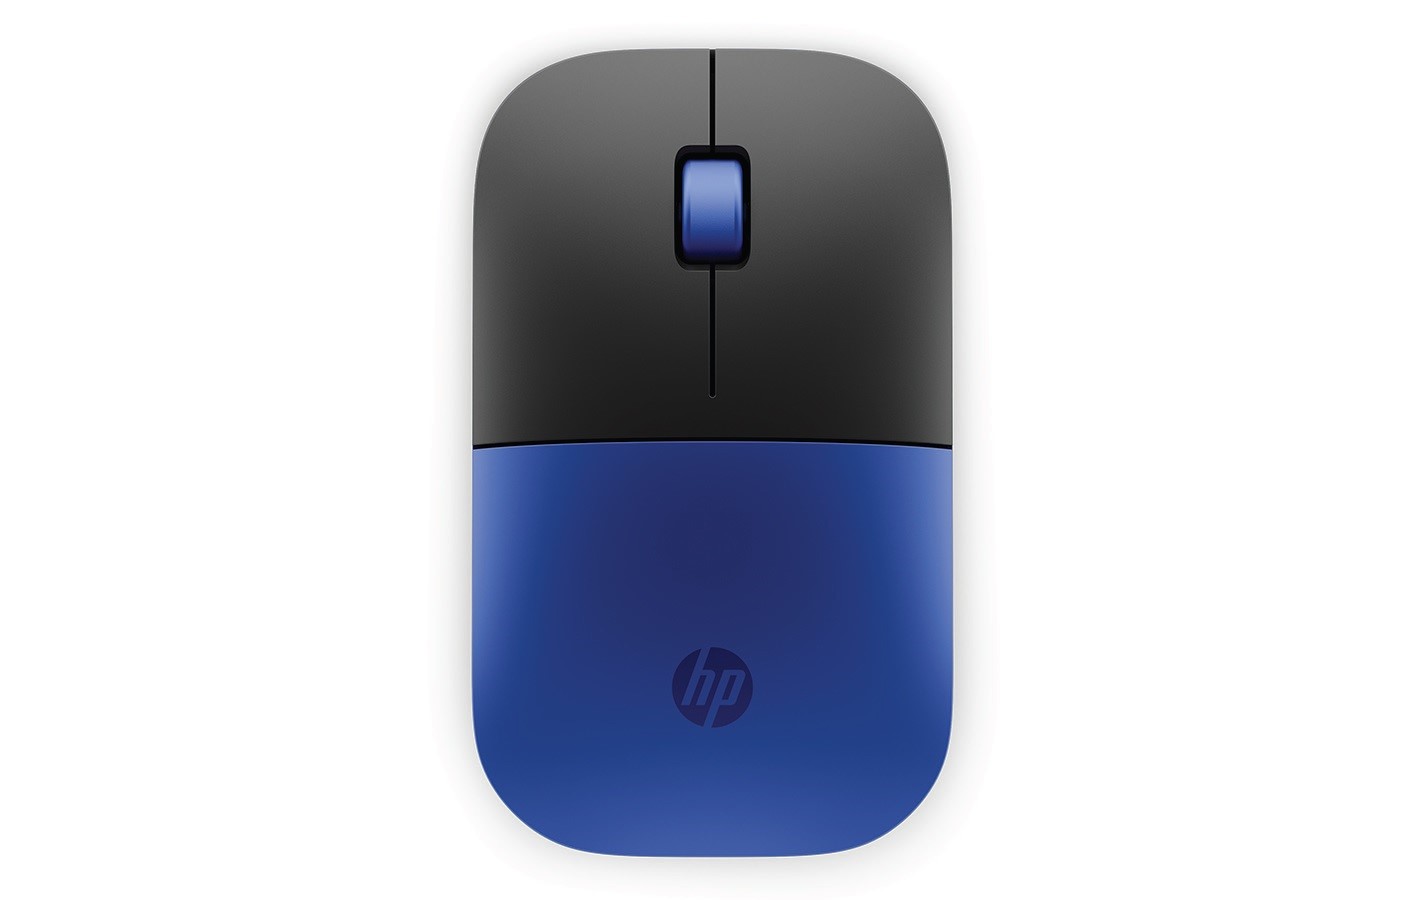 HP myš - Z3700 Mouse, | Dragonfly Blue eD system Wireless